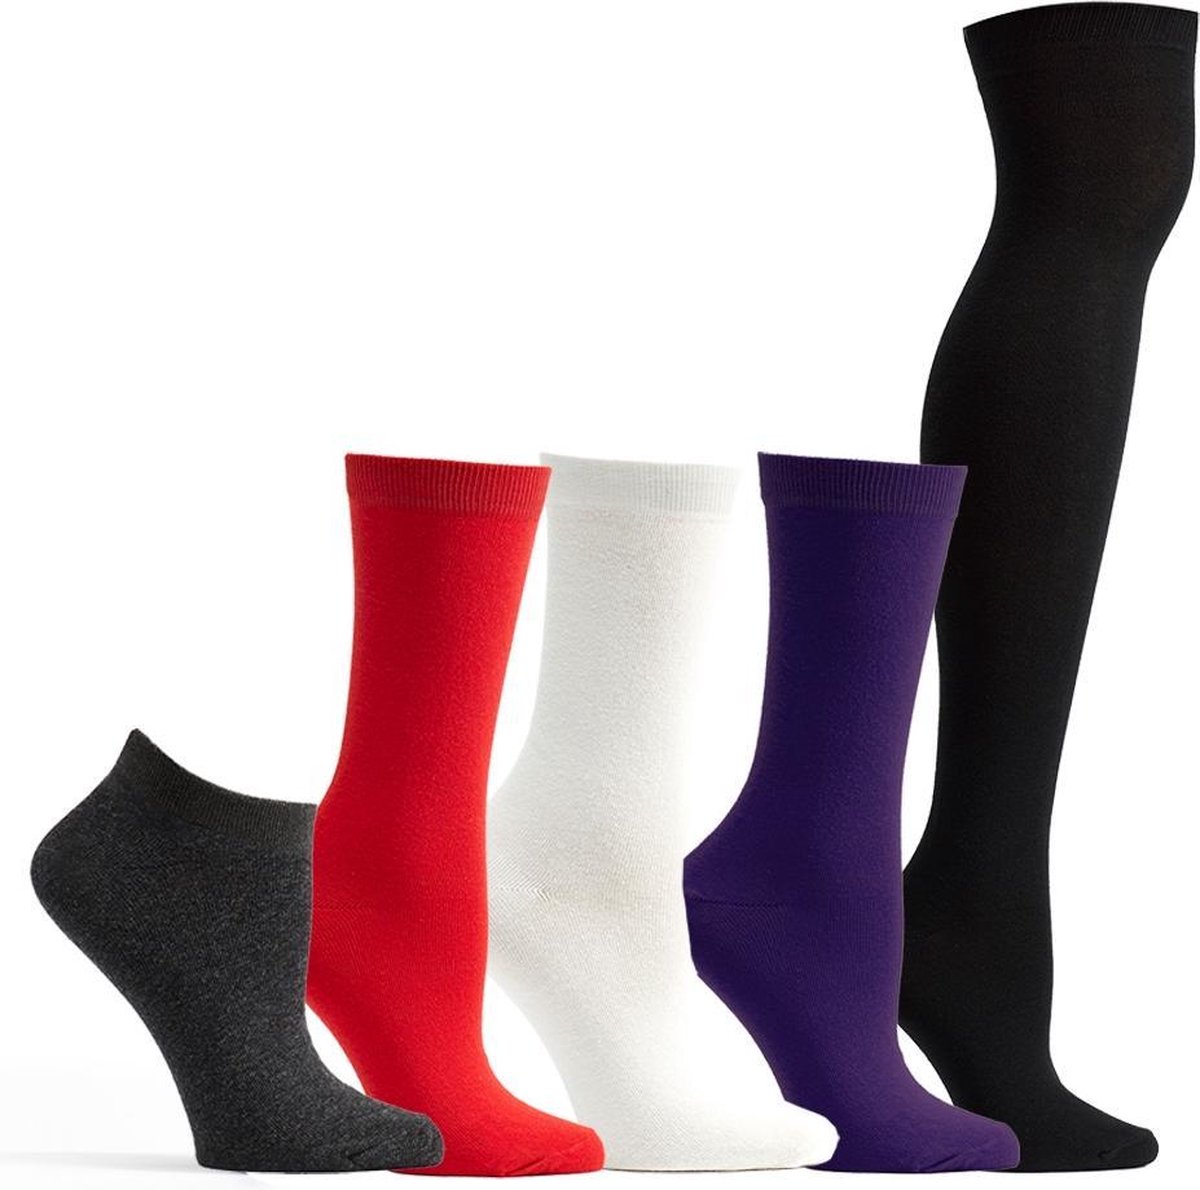 OZONE | Set van 5 Dames Sokken | Cotton Basics-collectie | Unisize | Geschenkset | Comfort en stijl als enkel-, crew- en kniehoog